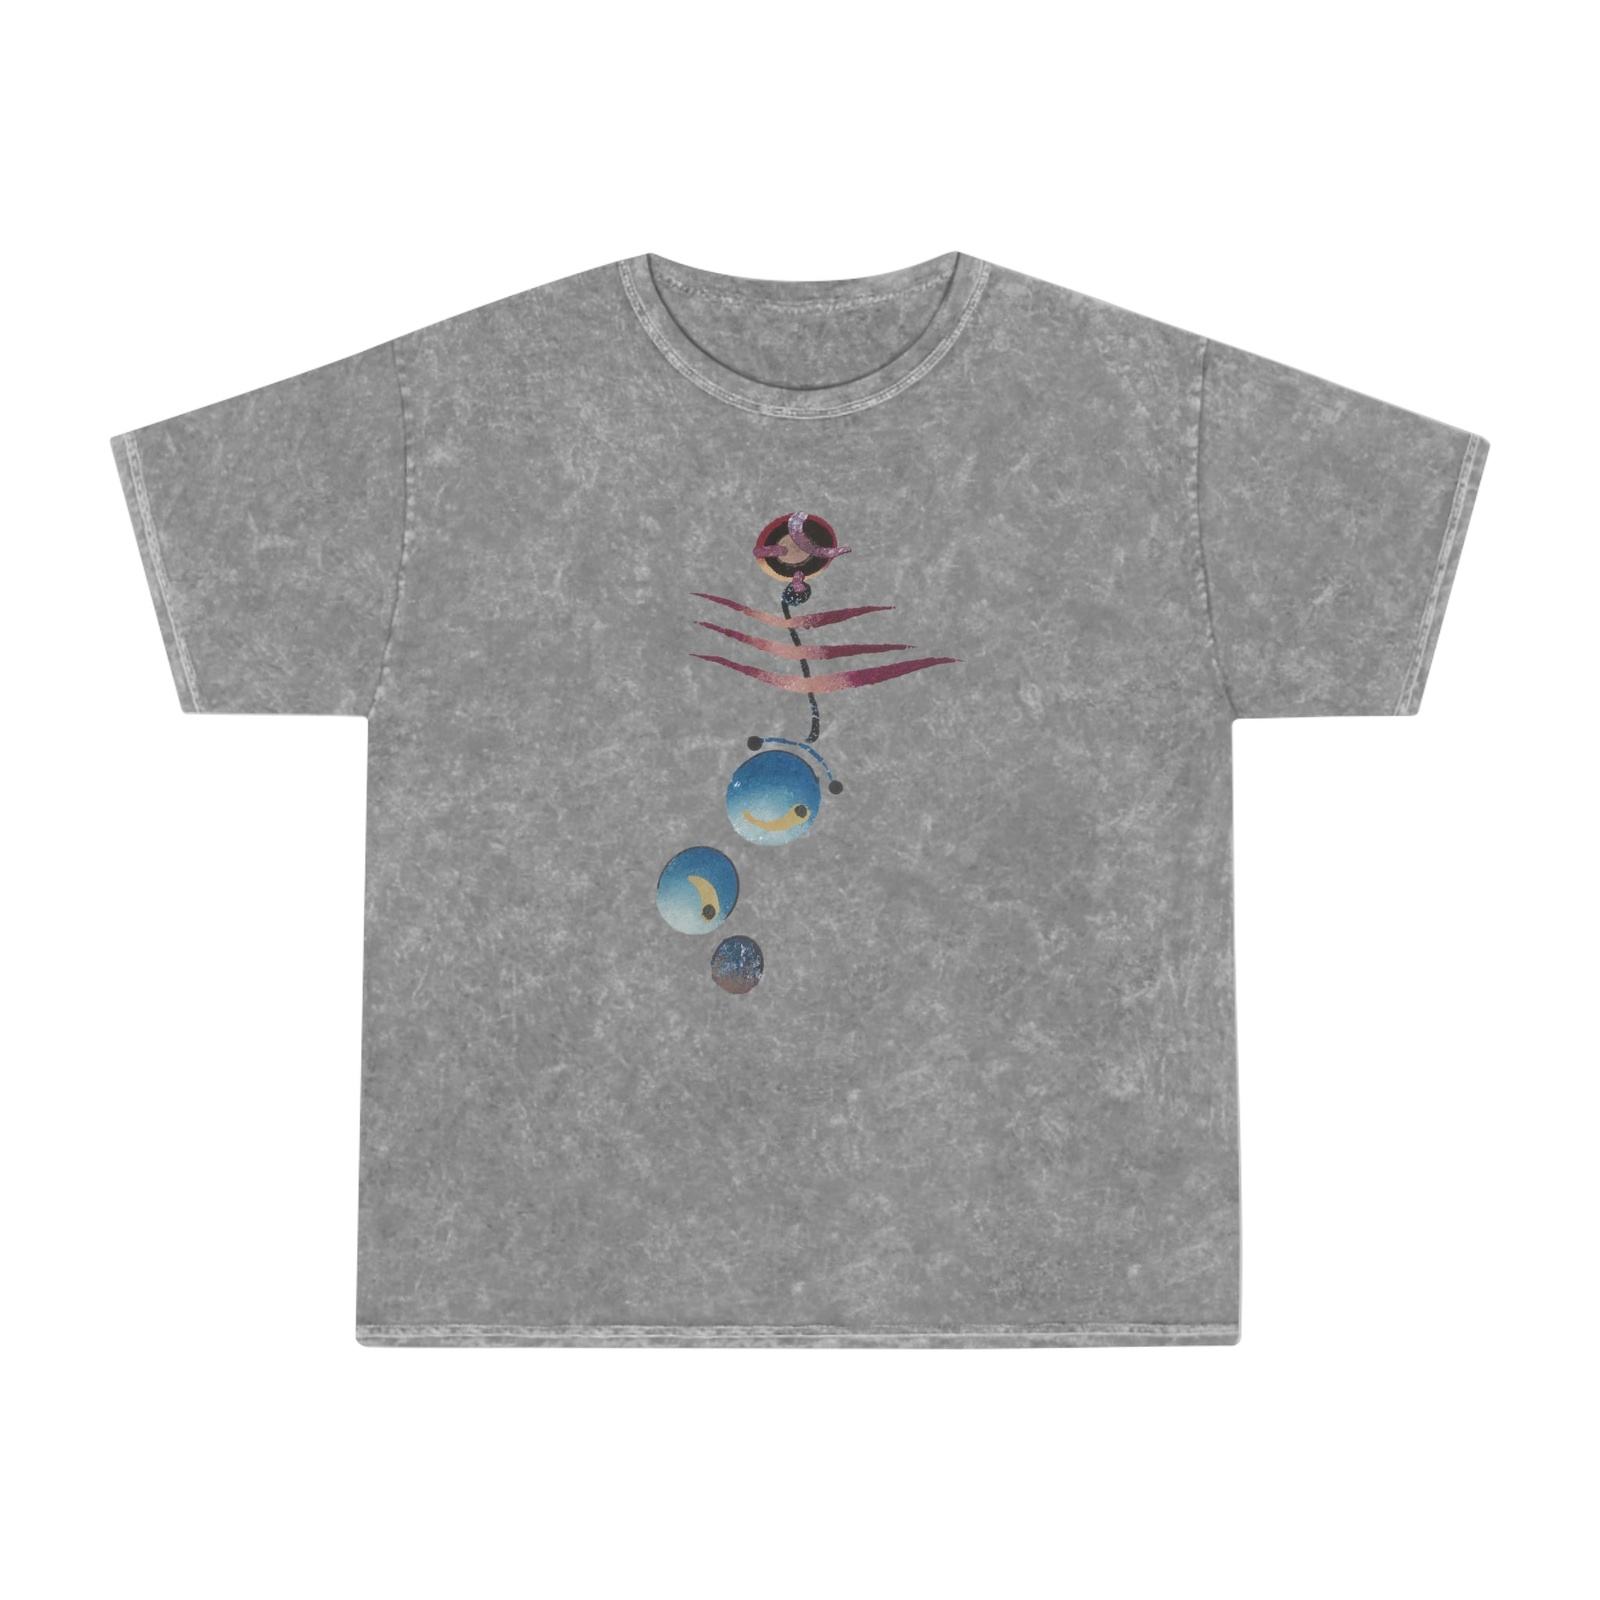 Unisex Mineral Wash T-Shirt round robin